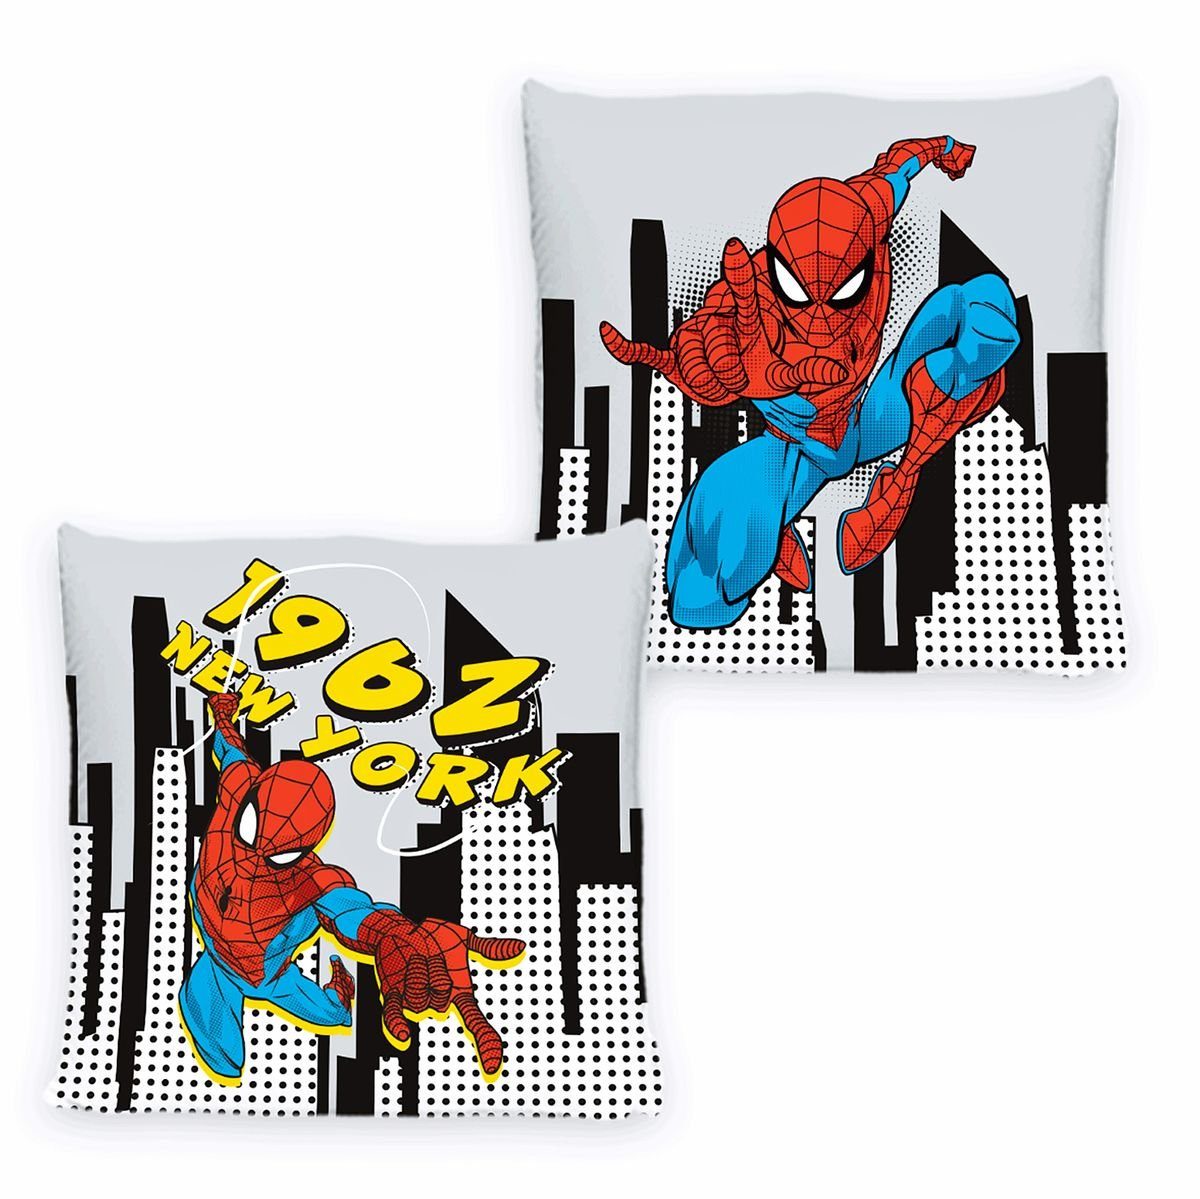 JACK Декоративні подушки 40x40cm Spider-Man inkl. Füllung Marvel Disney, Superheld, kuschelig weiche Qualität